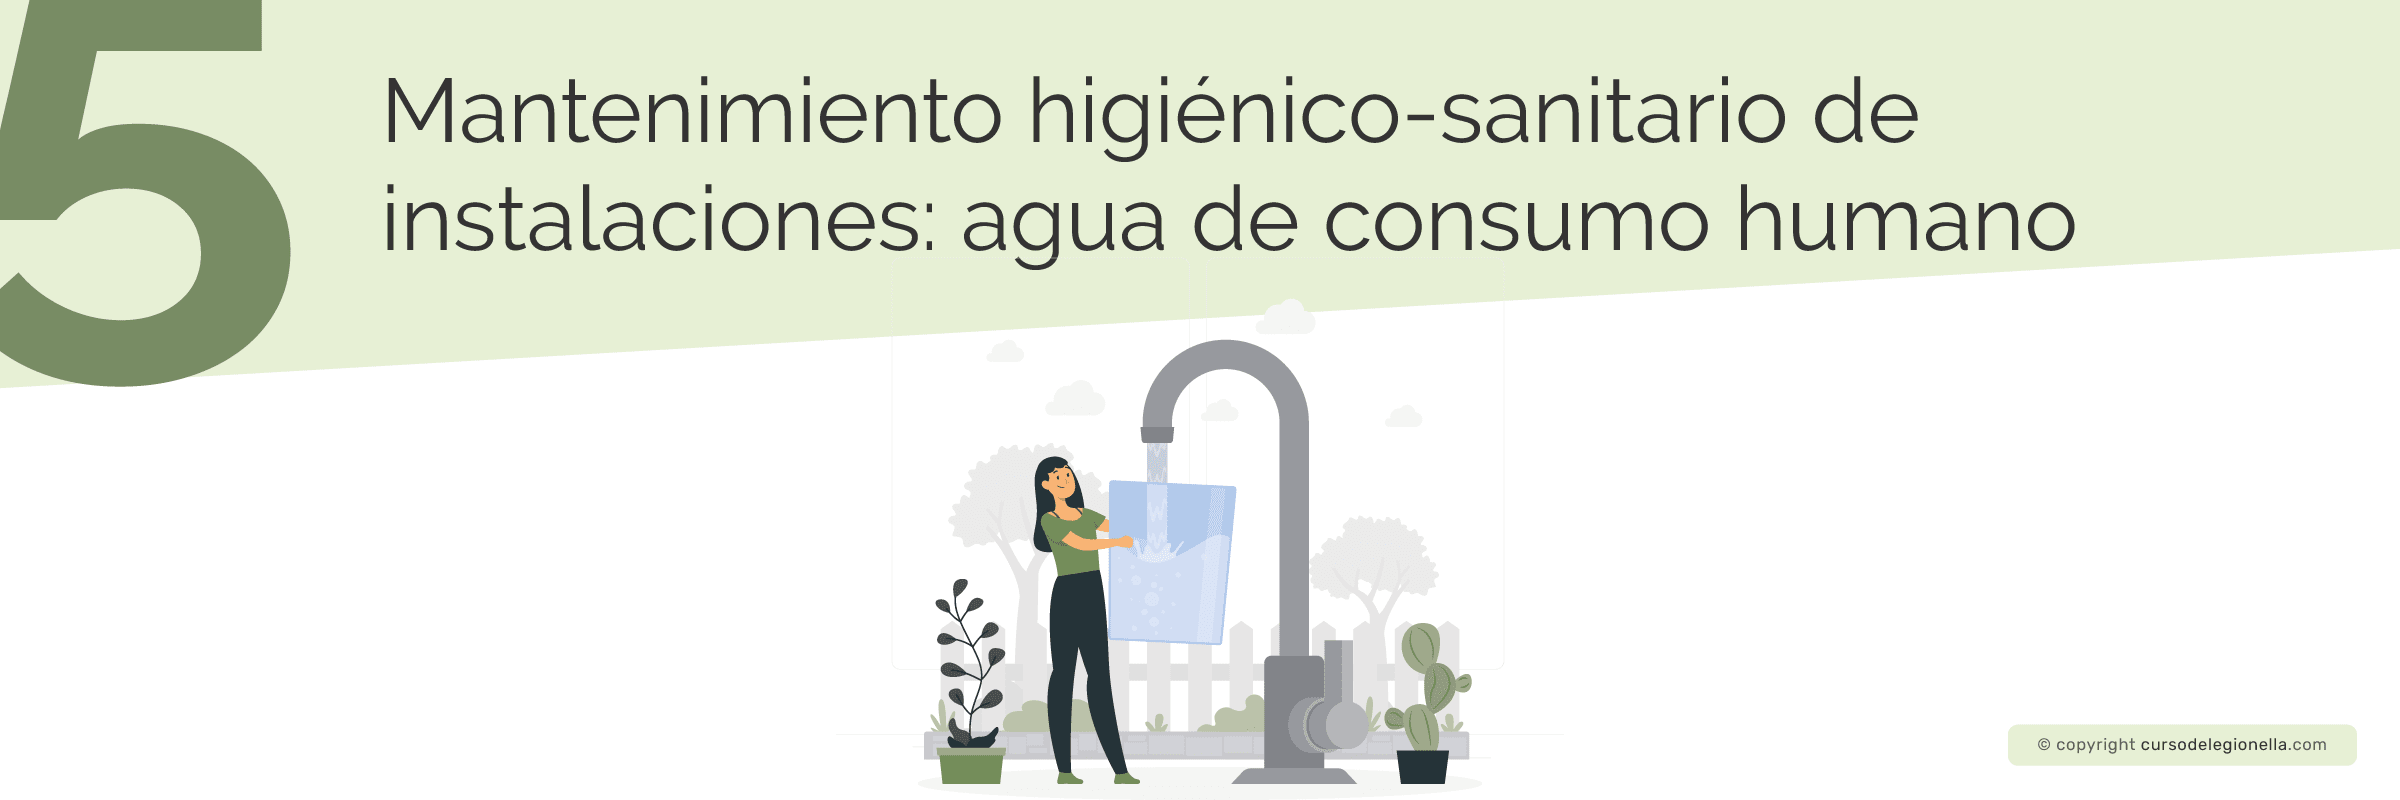 Mantenimiento higiénico-sanitario de instalaciones: Agua de consumo humano